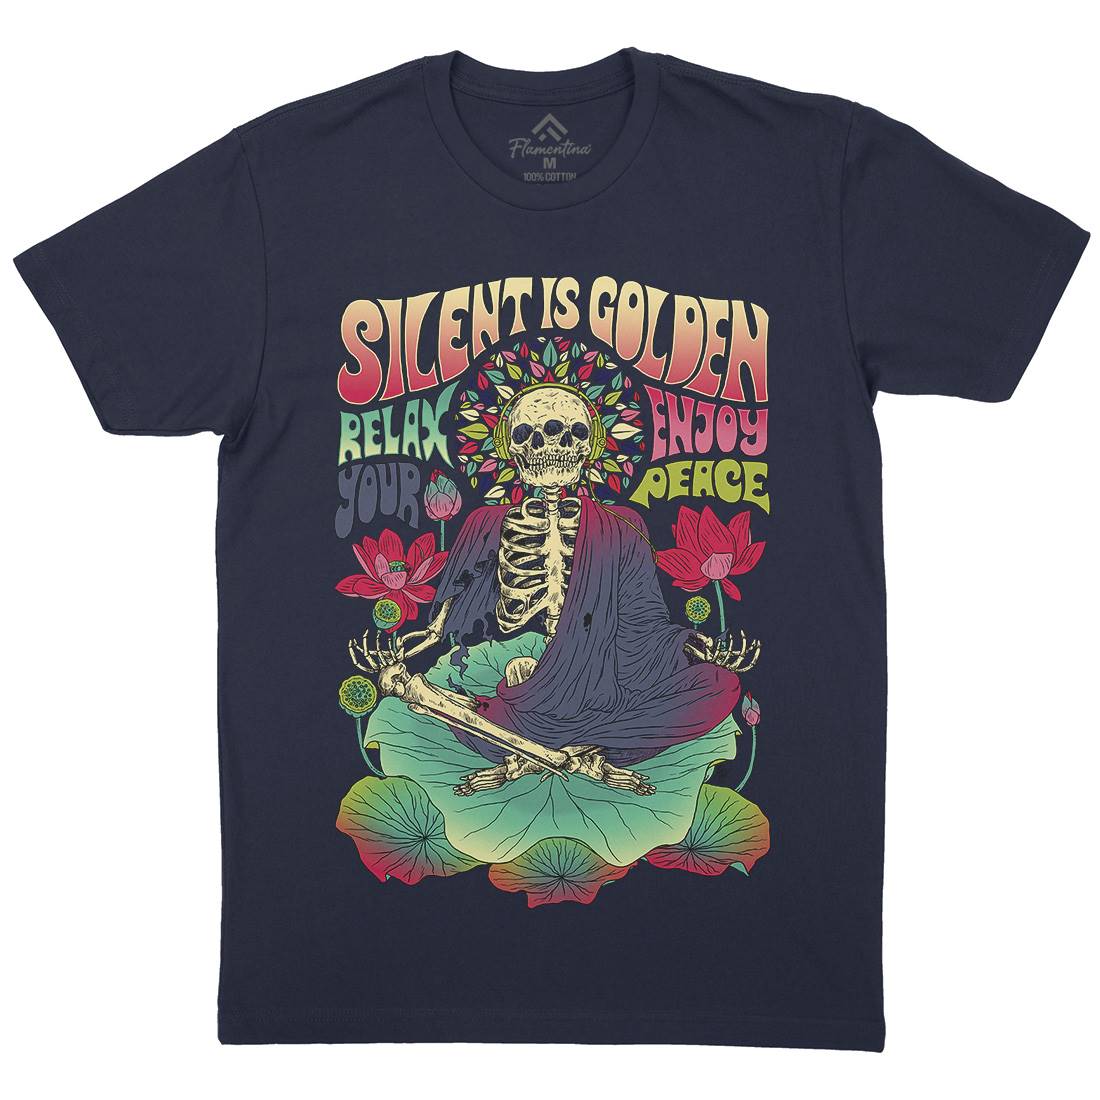 Silent Is Golden Mens Organic Crew Neck T-Shirt Peace D080